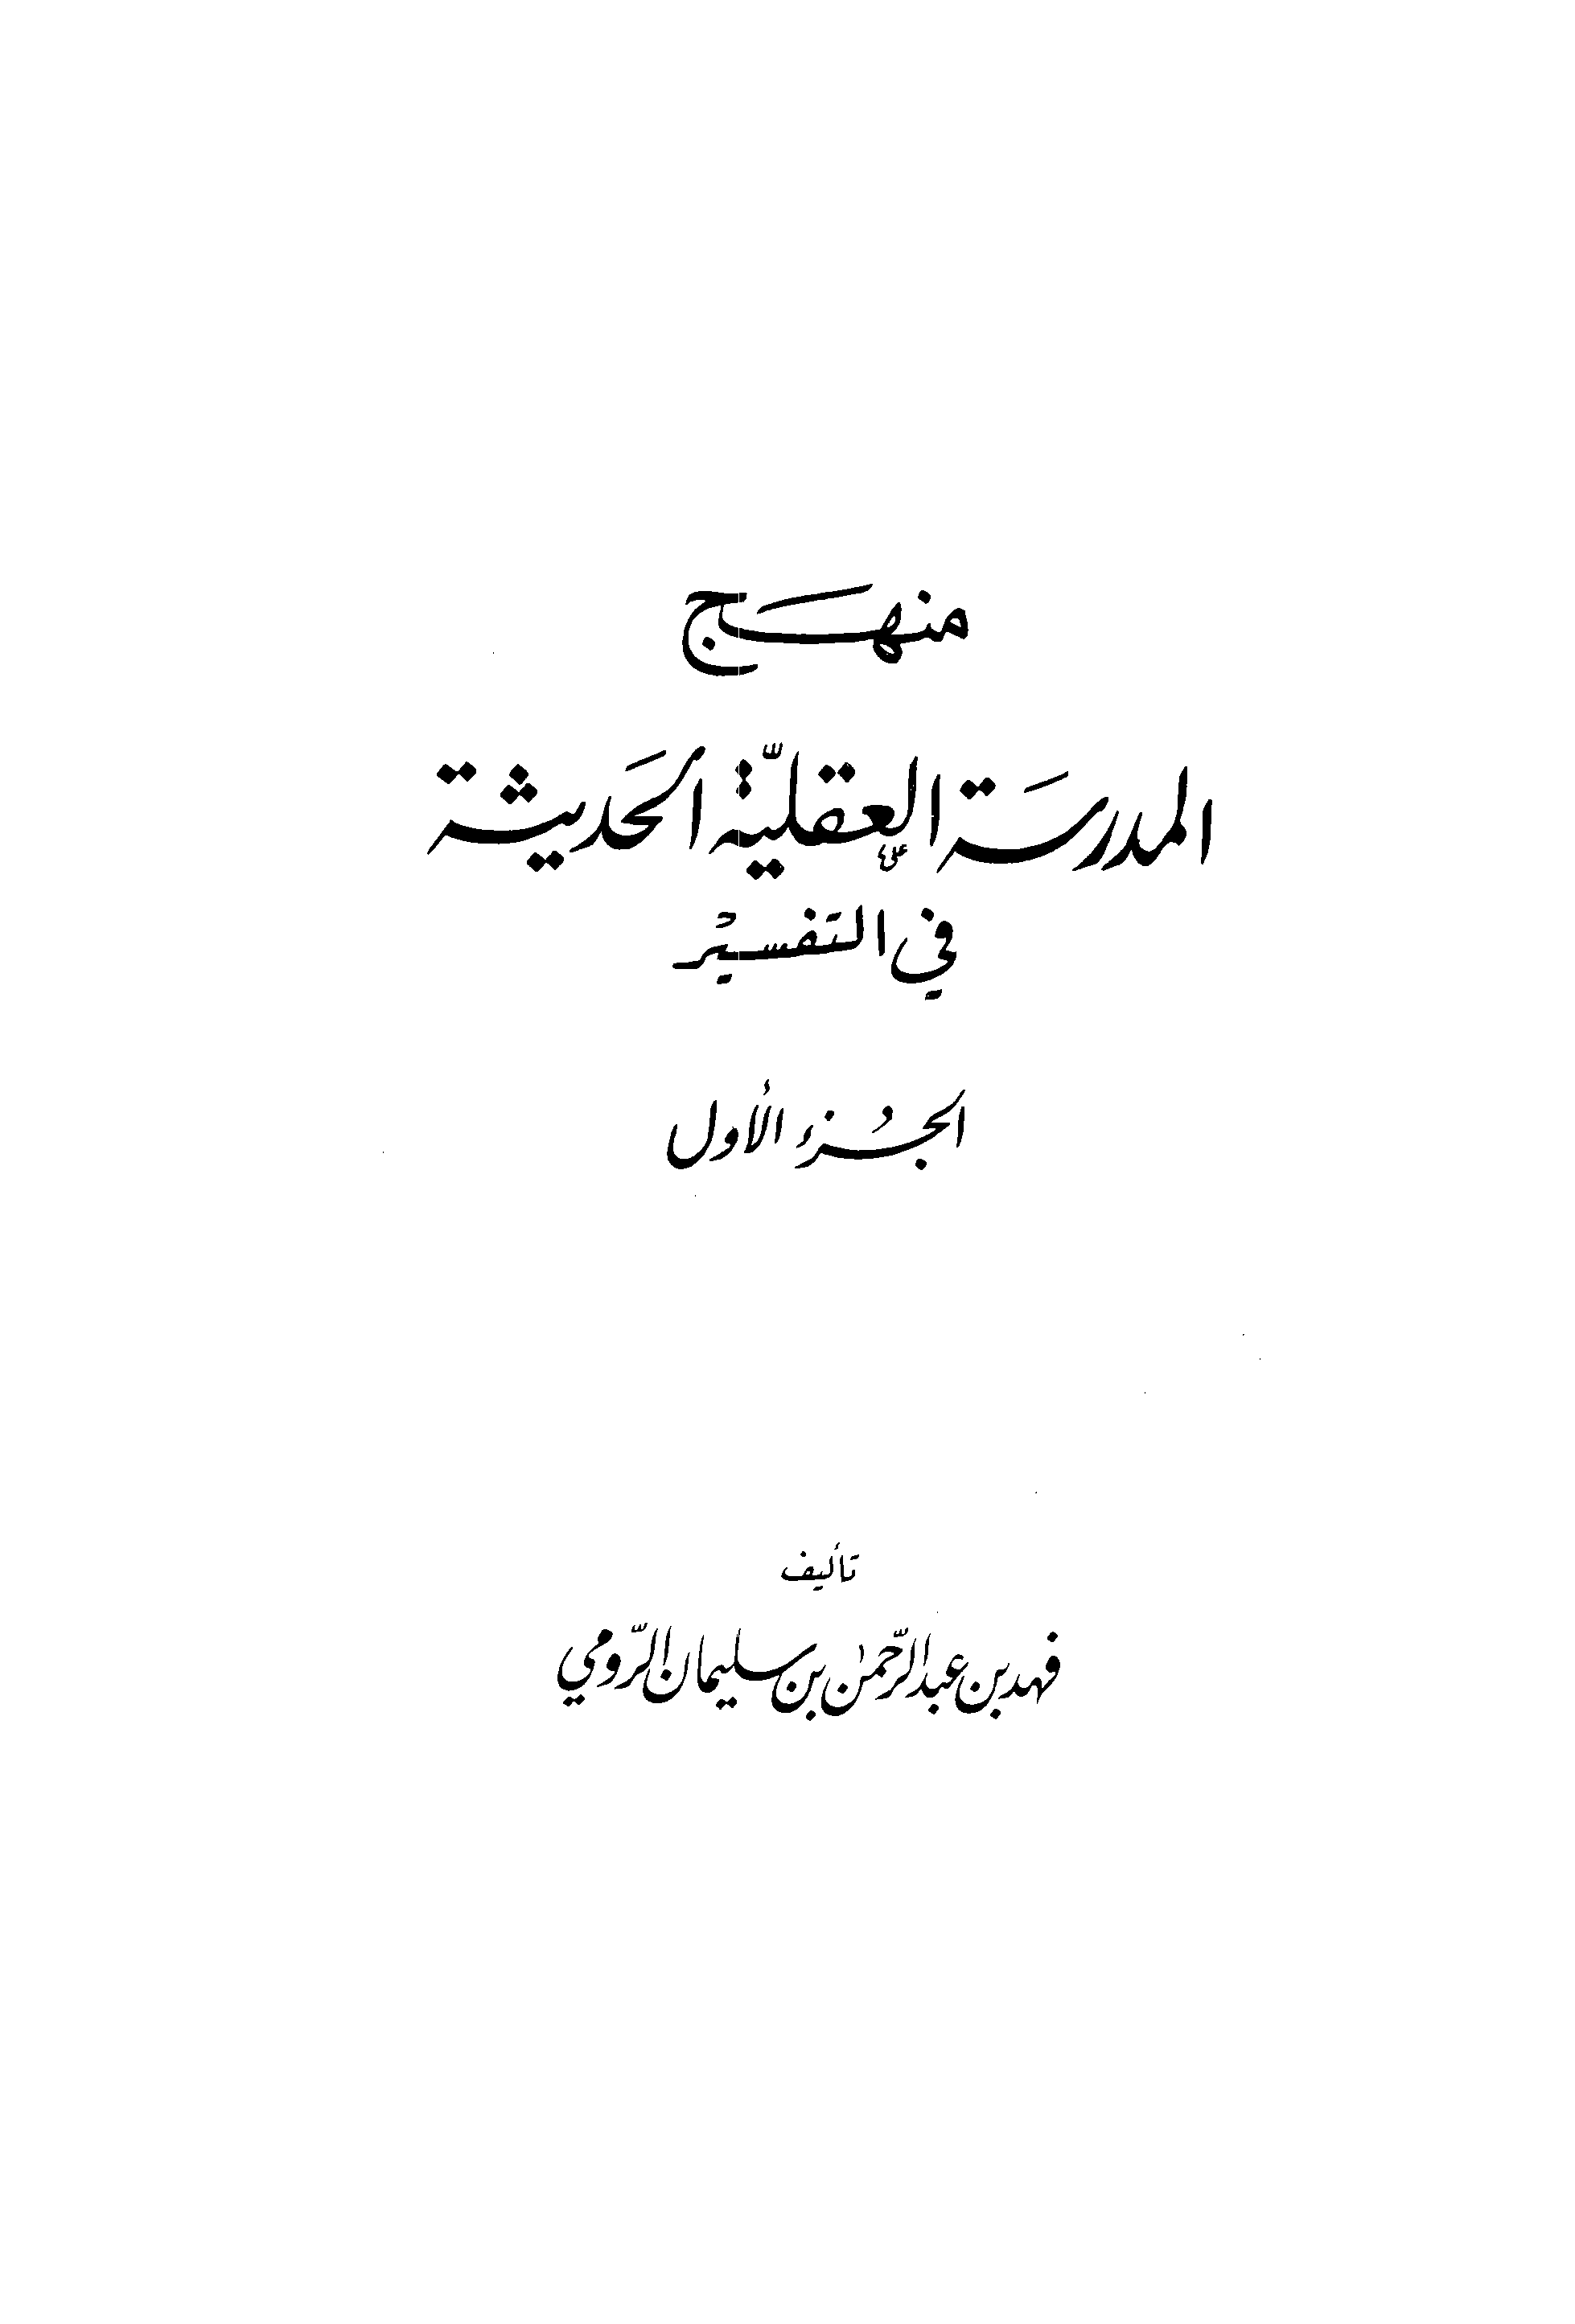 تحميل كتاب منهج المدرسة العقلية الحديثة في التفسير للمؤلف: الدكتور فهد بن عبد الرحمن بن سليمان الرومي